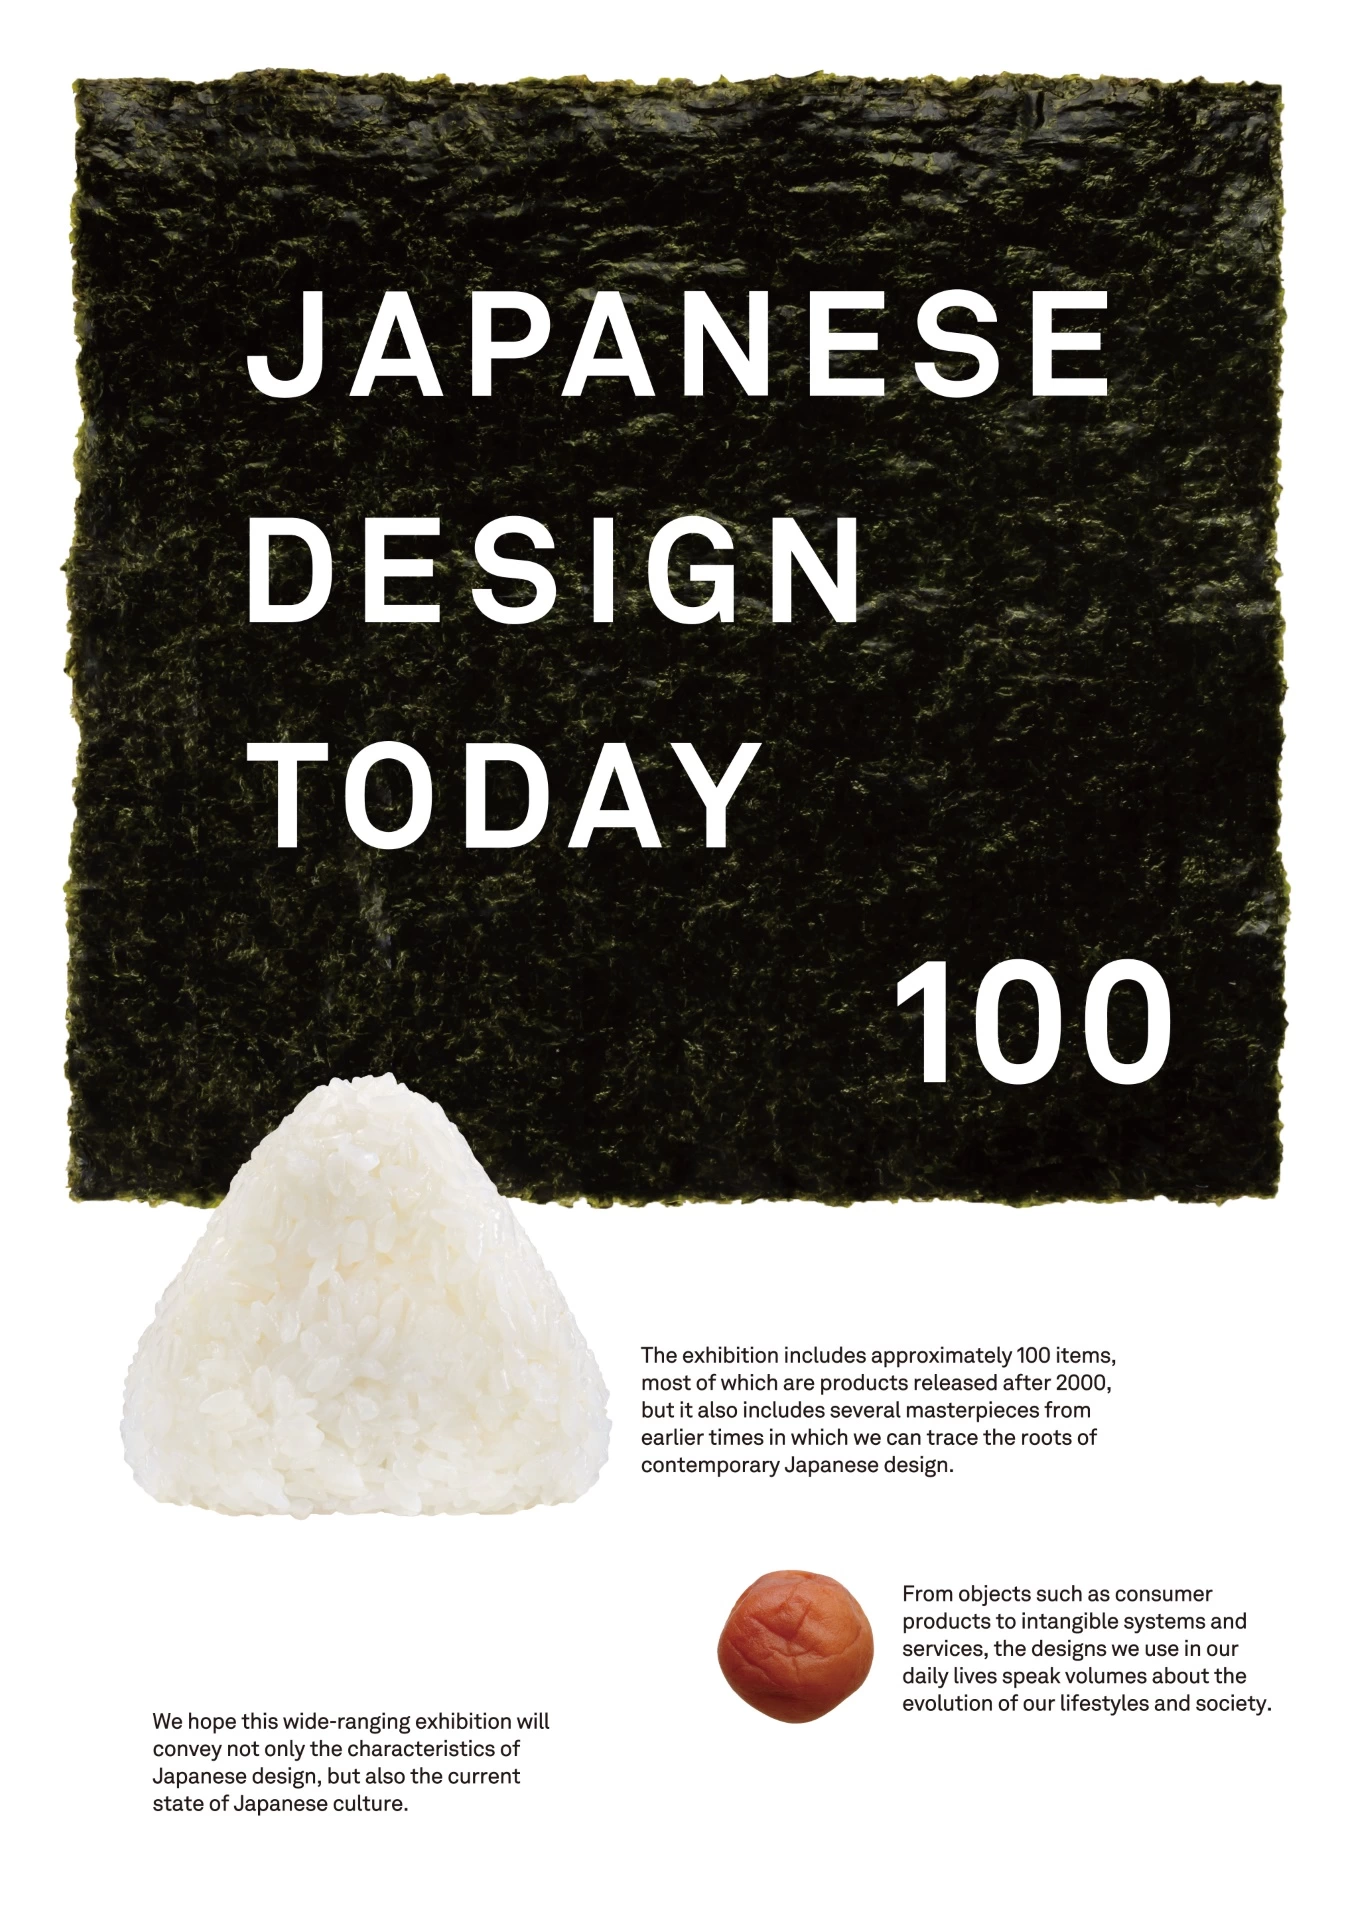 東京ミッドタウン・デザインハブ特別展「Japanese Design Today 100(現代日本デザイン100選)」